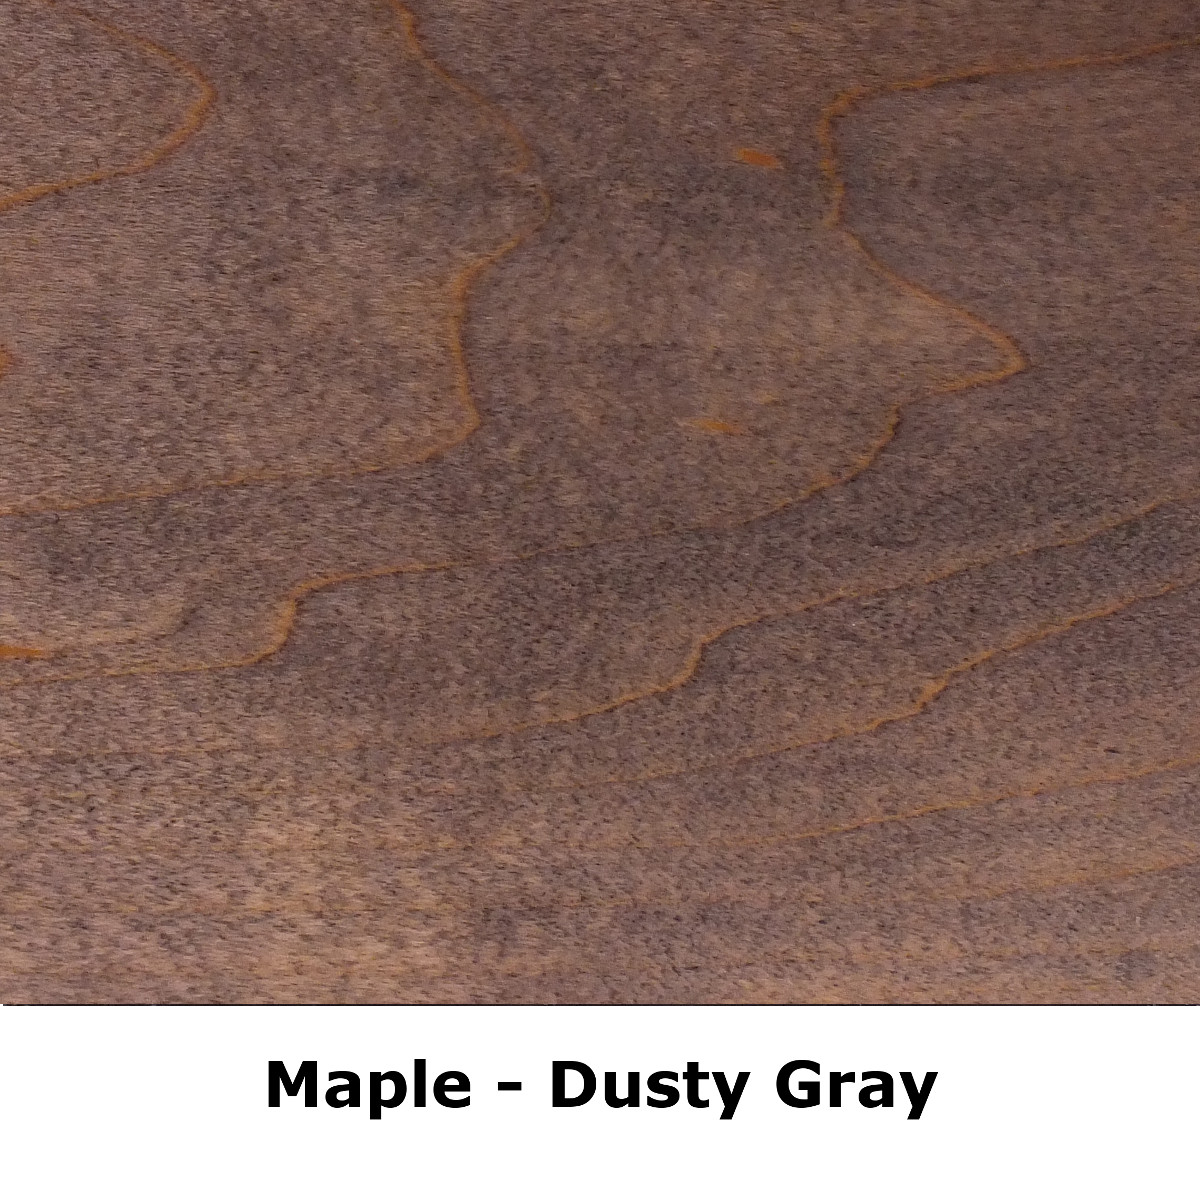 sq Maple dusty grey.jpeg